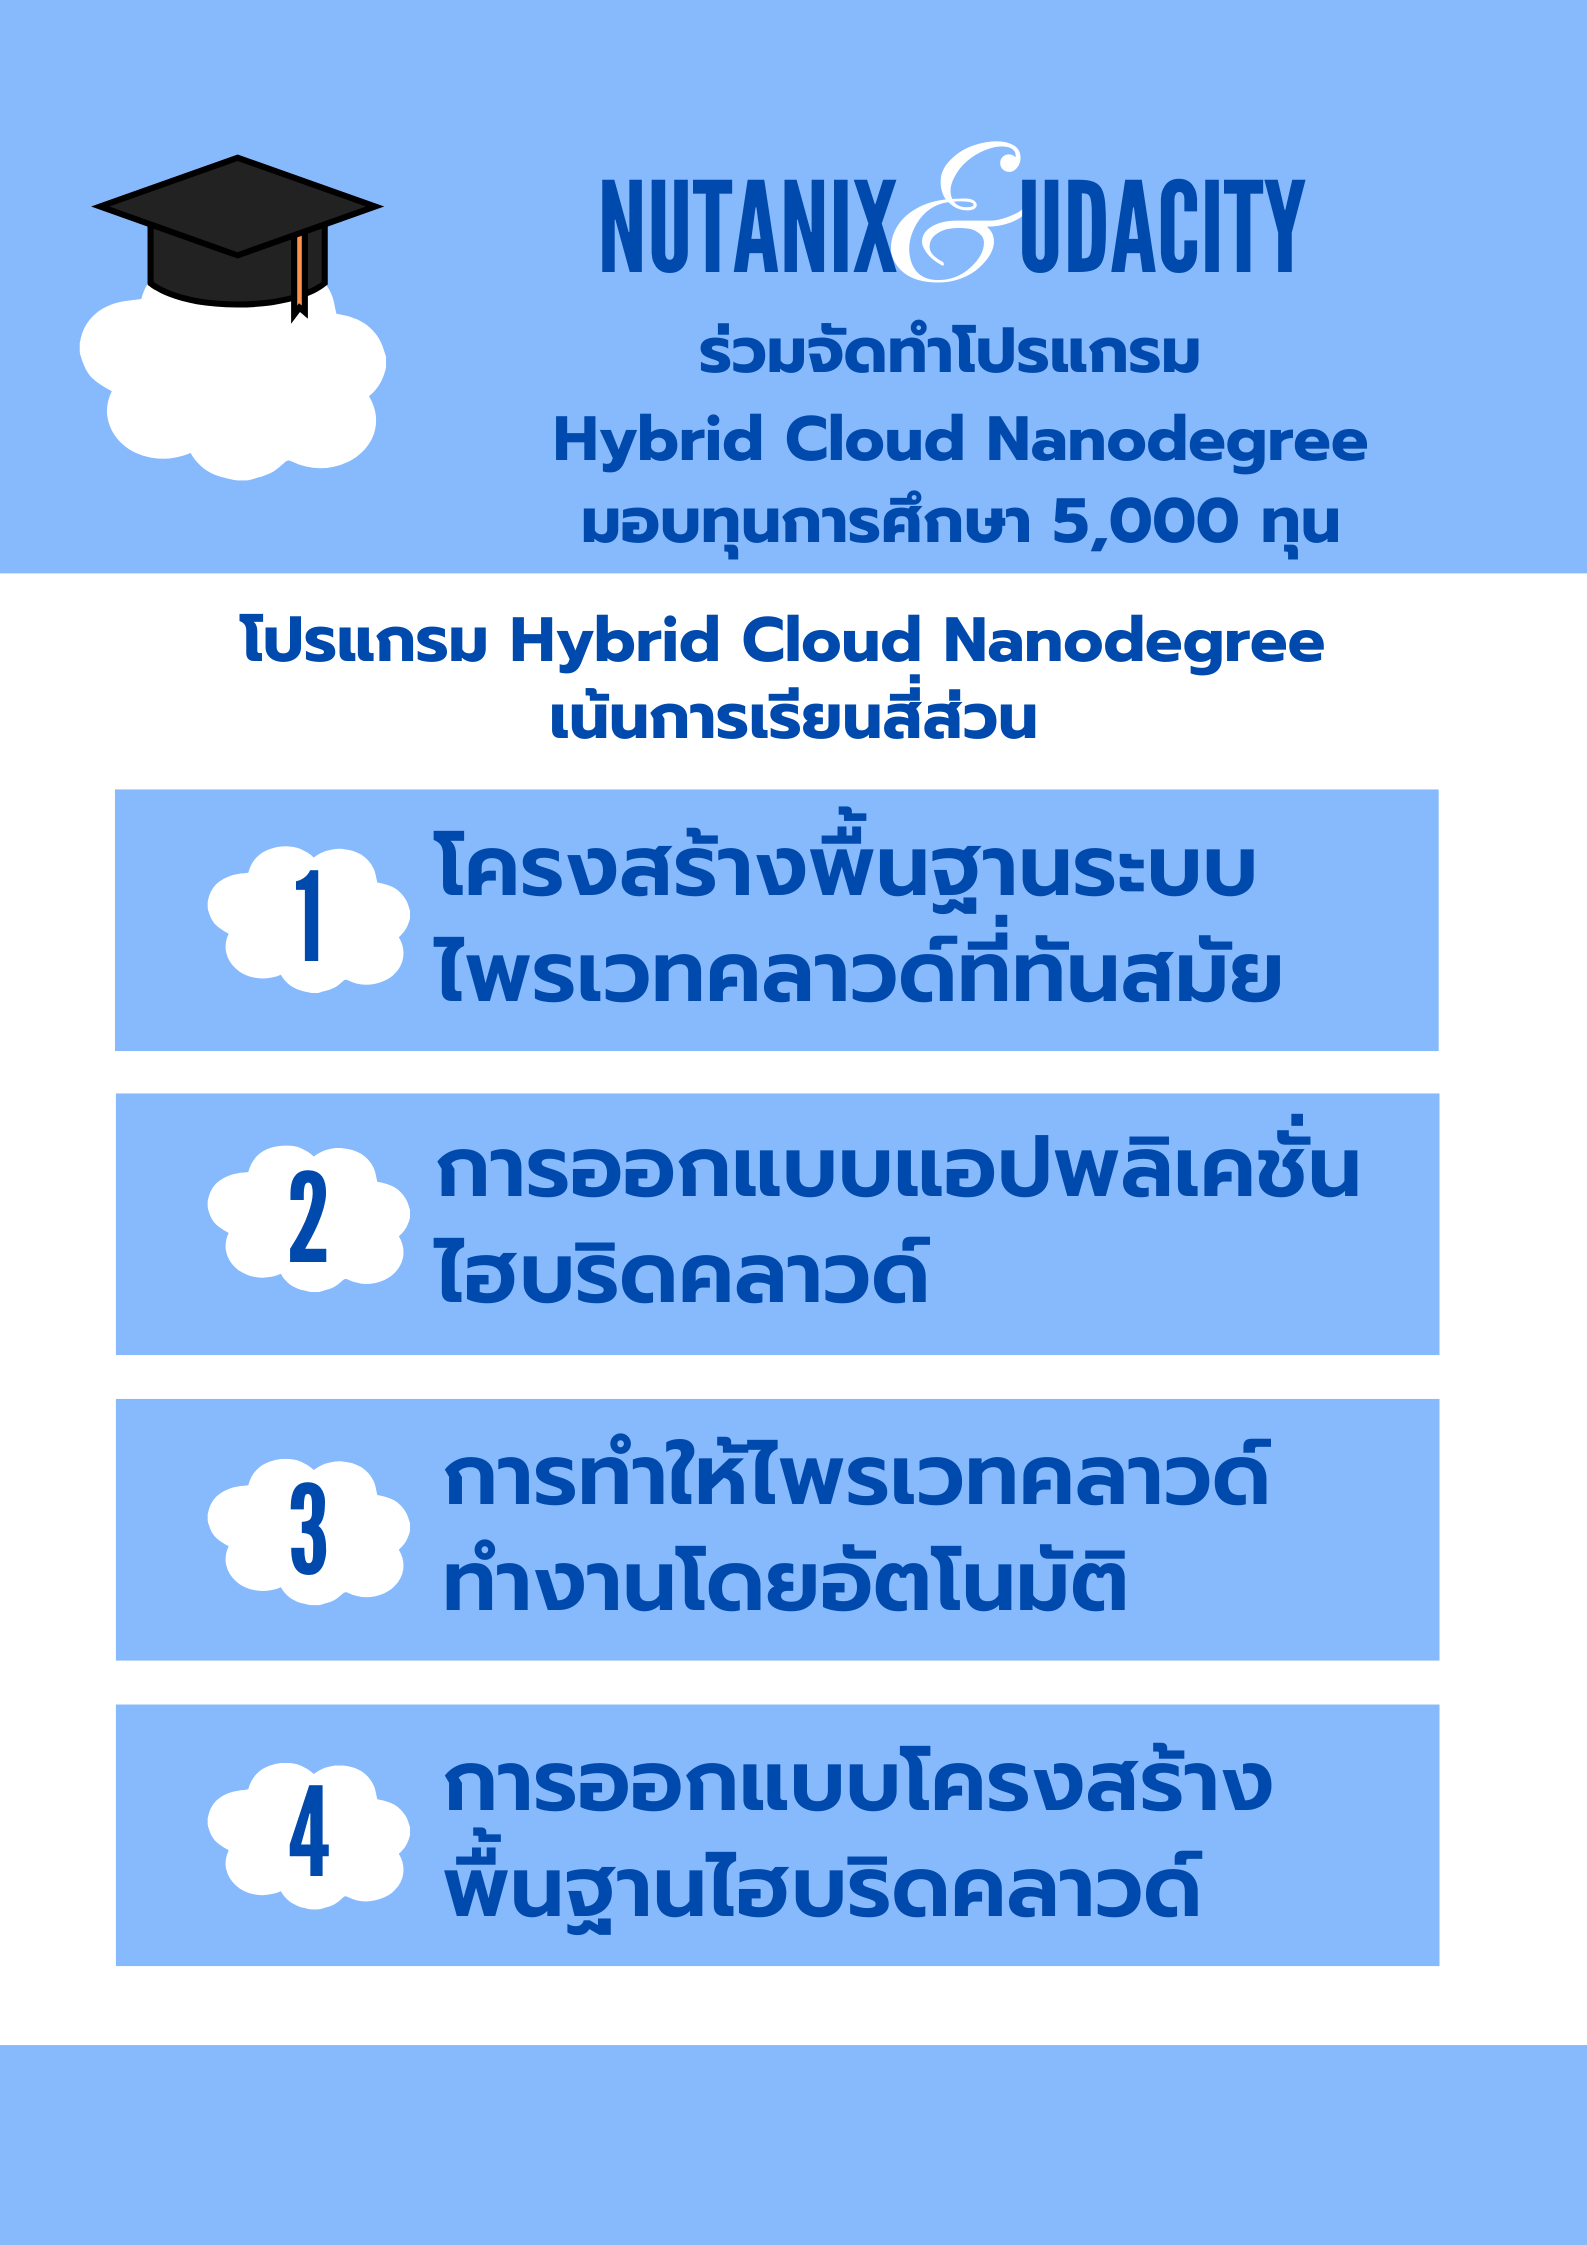 Nutanix ร่วมมือกับ Udacity จัดทำโปรแกรม Hybrid Cloud Nanodegree มอบโอกาสทางการศึกษาจำนวน 5,000 ทุนให้กับผู้เชี่ยวชาญด้านไอที